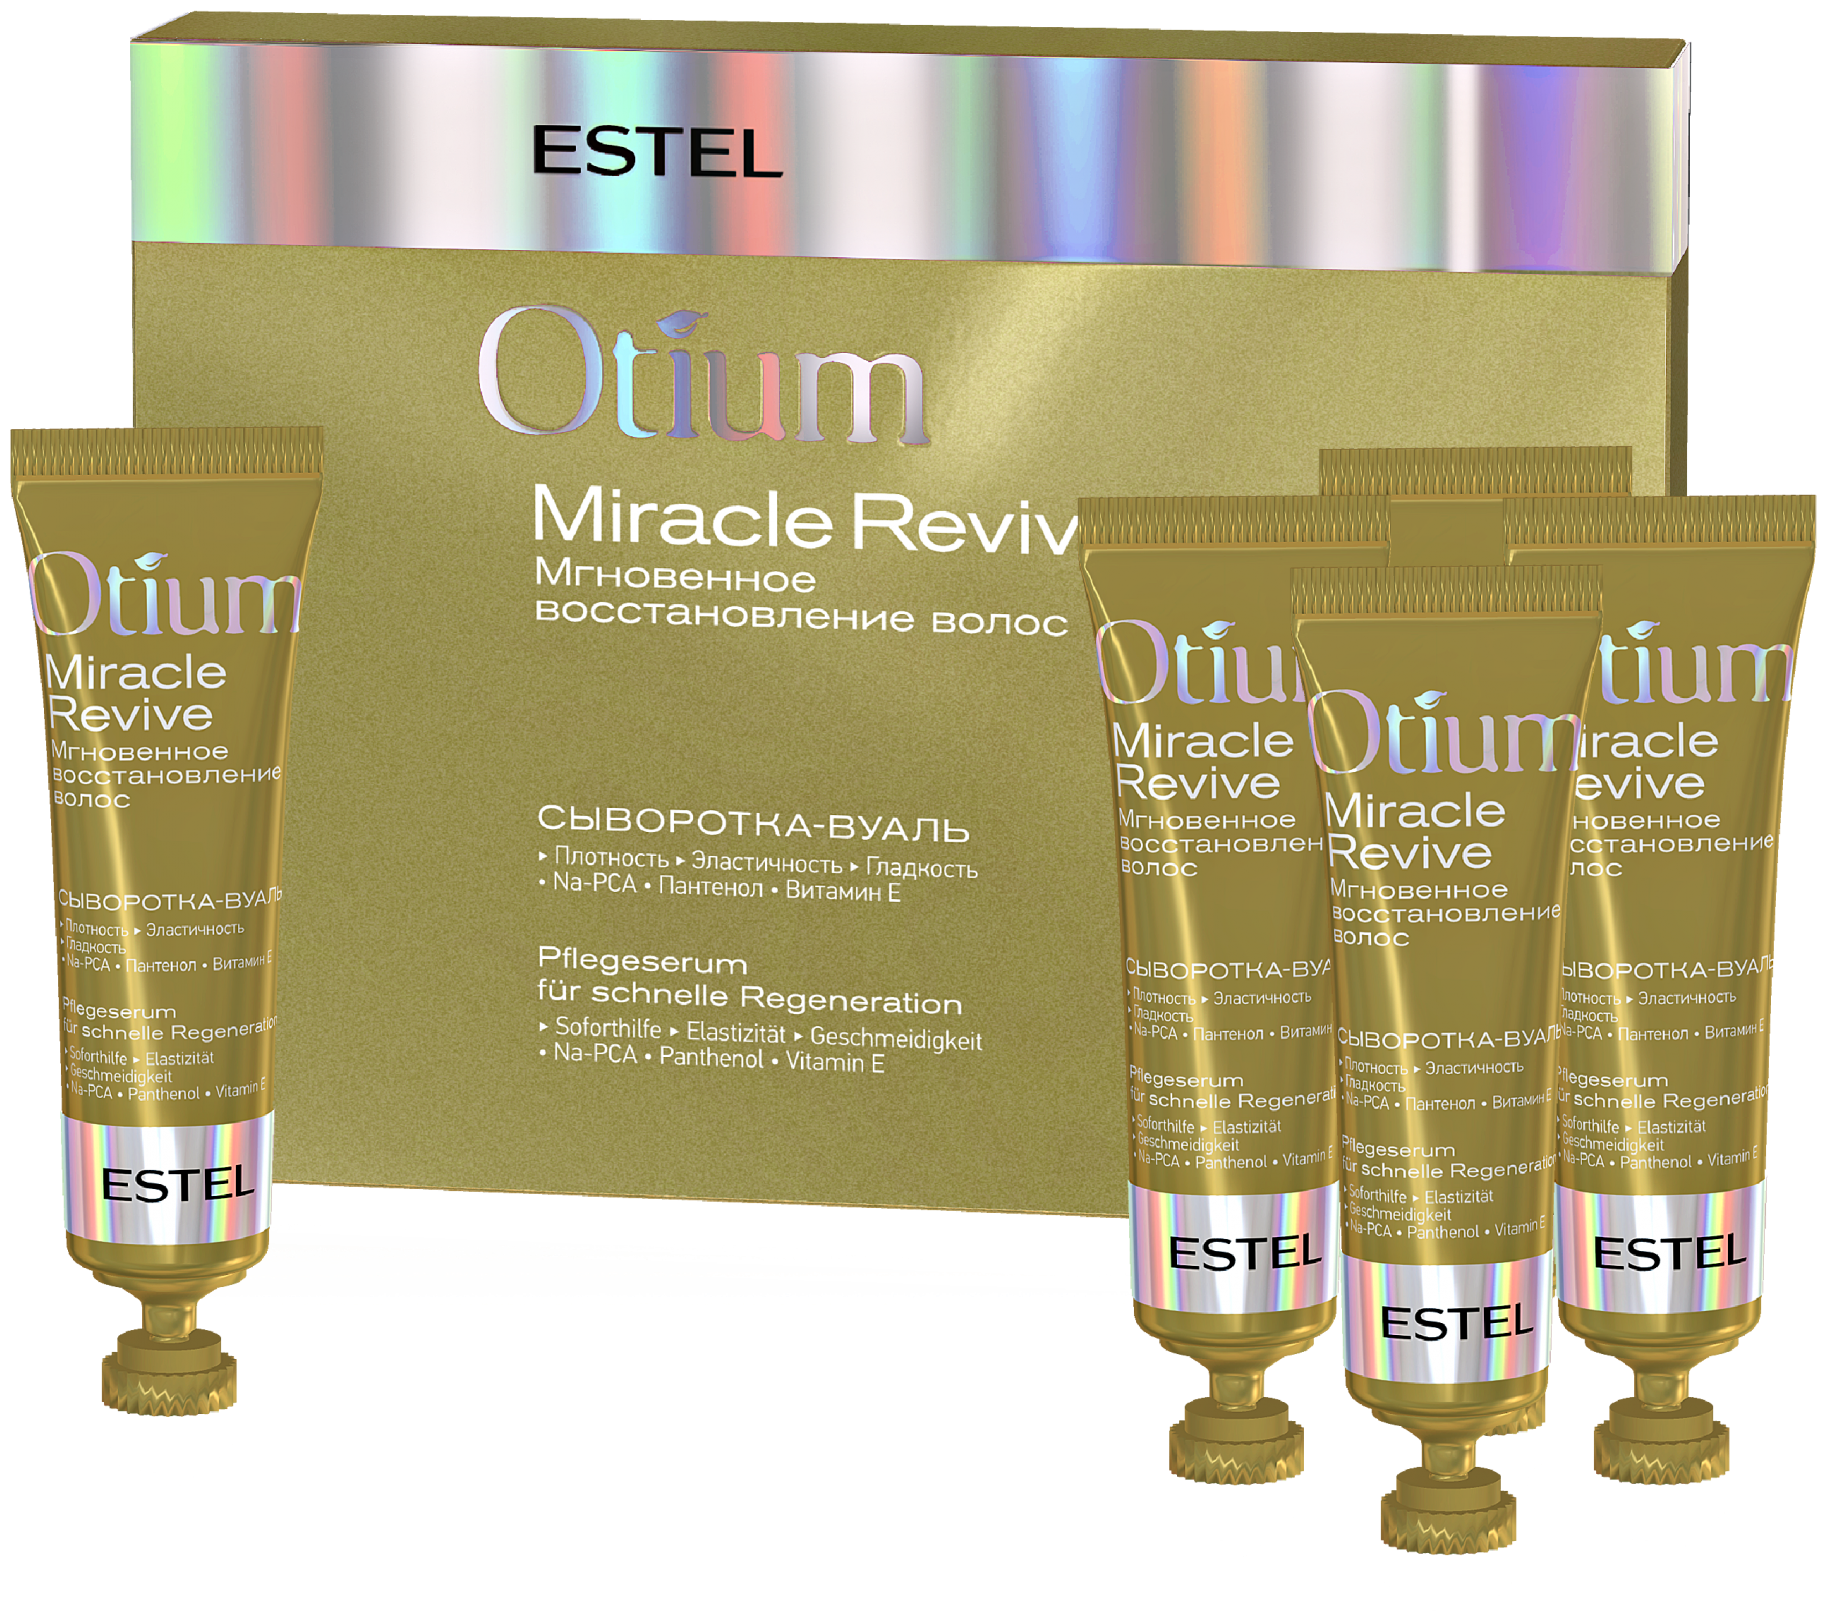 ESTEL OTIUM MIRACLE REVIVE Сыворотка-вуаль для волос «Мгновенное восстановление»